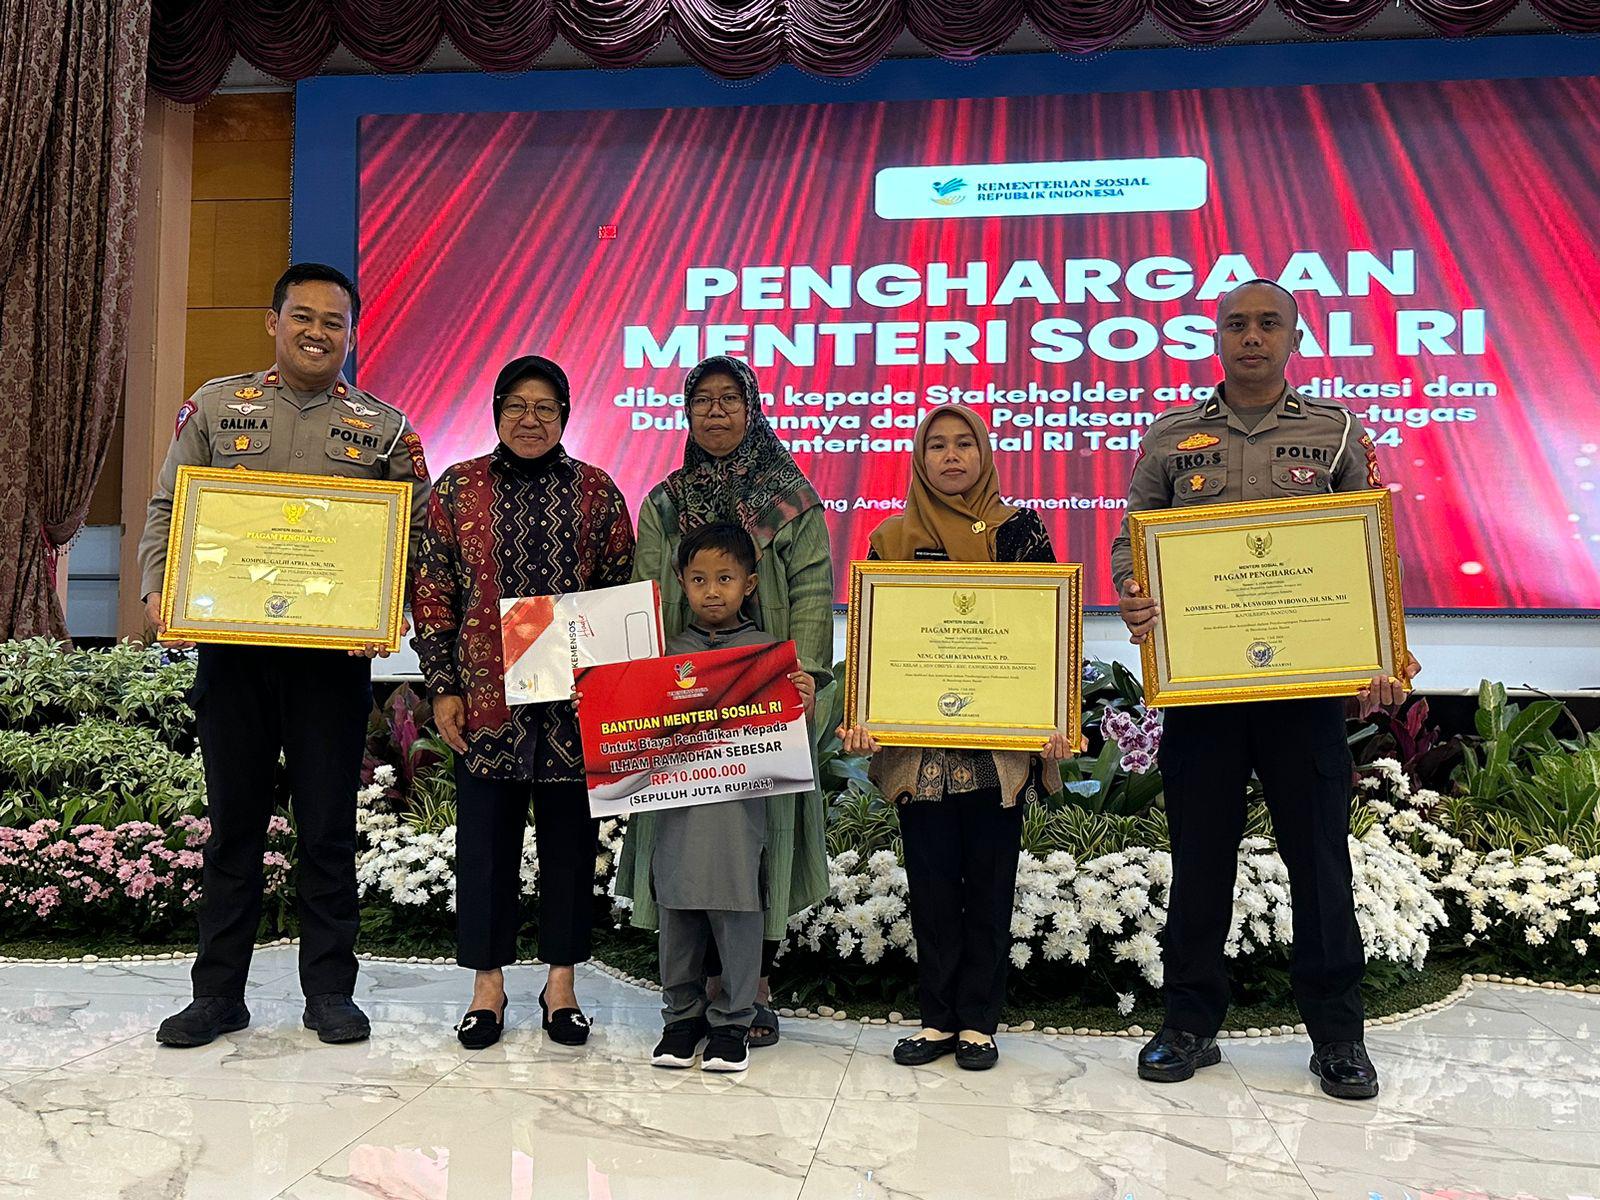 Menteri Sosial saat memberikan beasiswa untuk Ilham dan memberikan penghargaan untuk Polresta Bandung serta Guru Ilham di Gedung Kemensos, Jakarta, Senin (8/7). Foto Istimewa